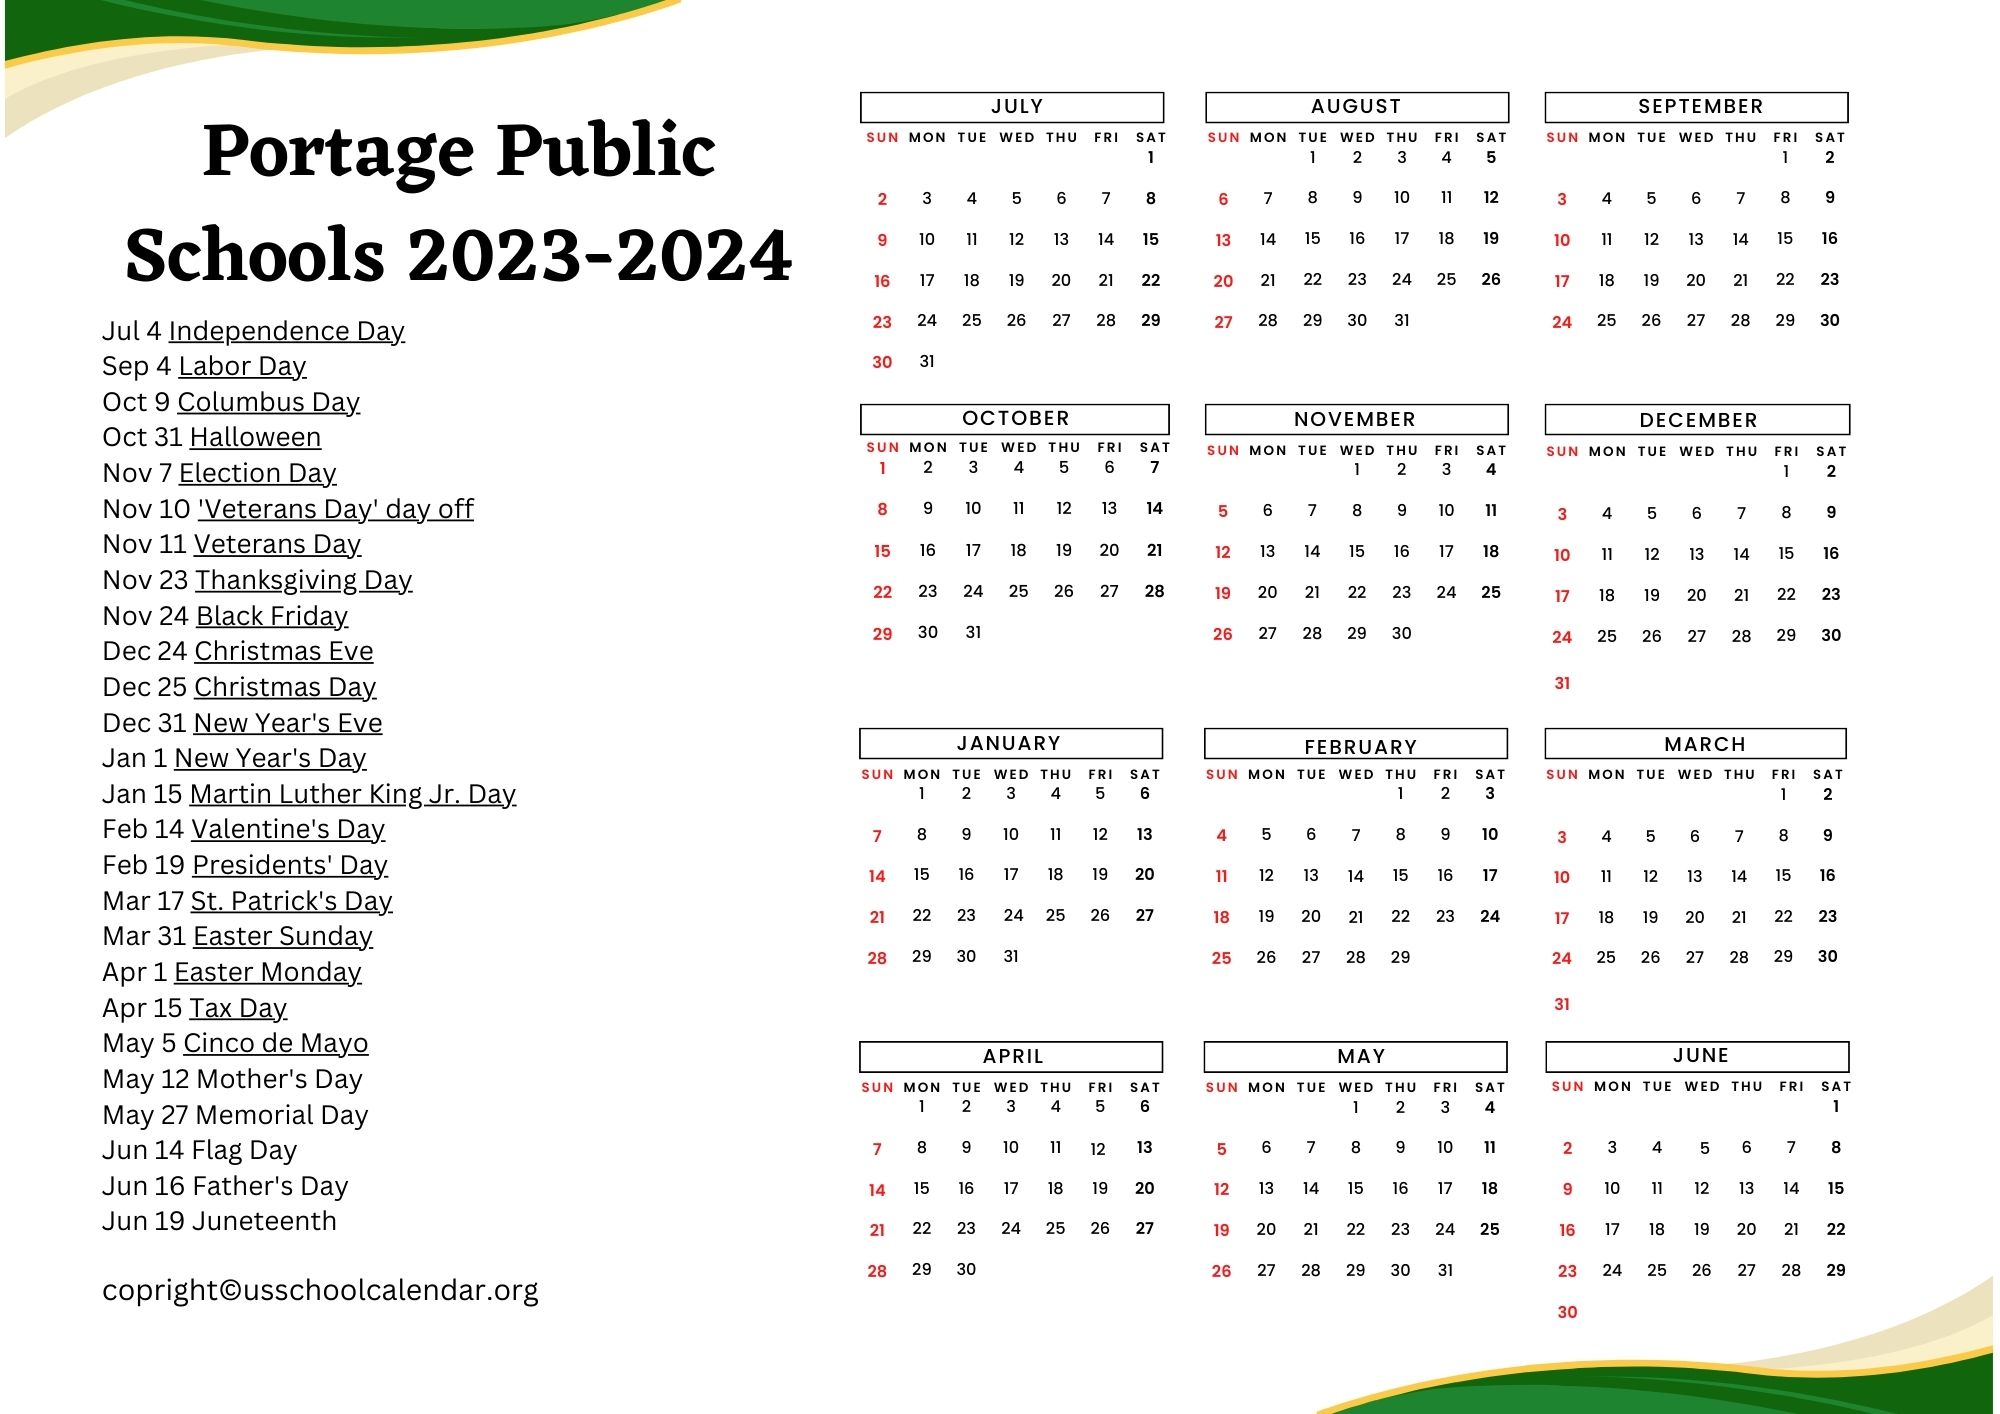 Portage Public Schools Calendar 2025